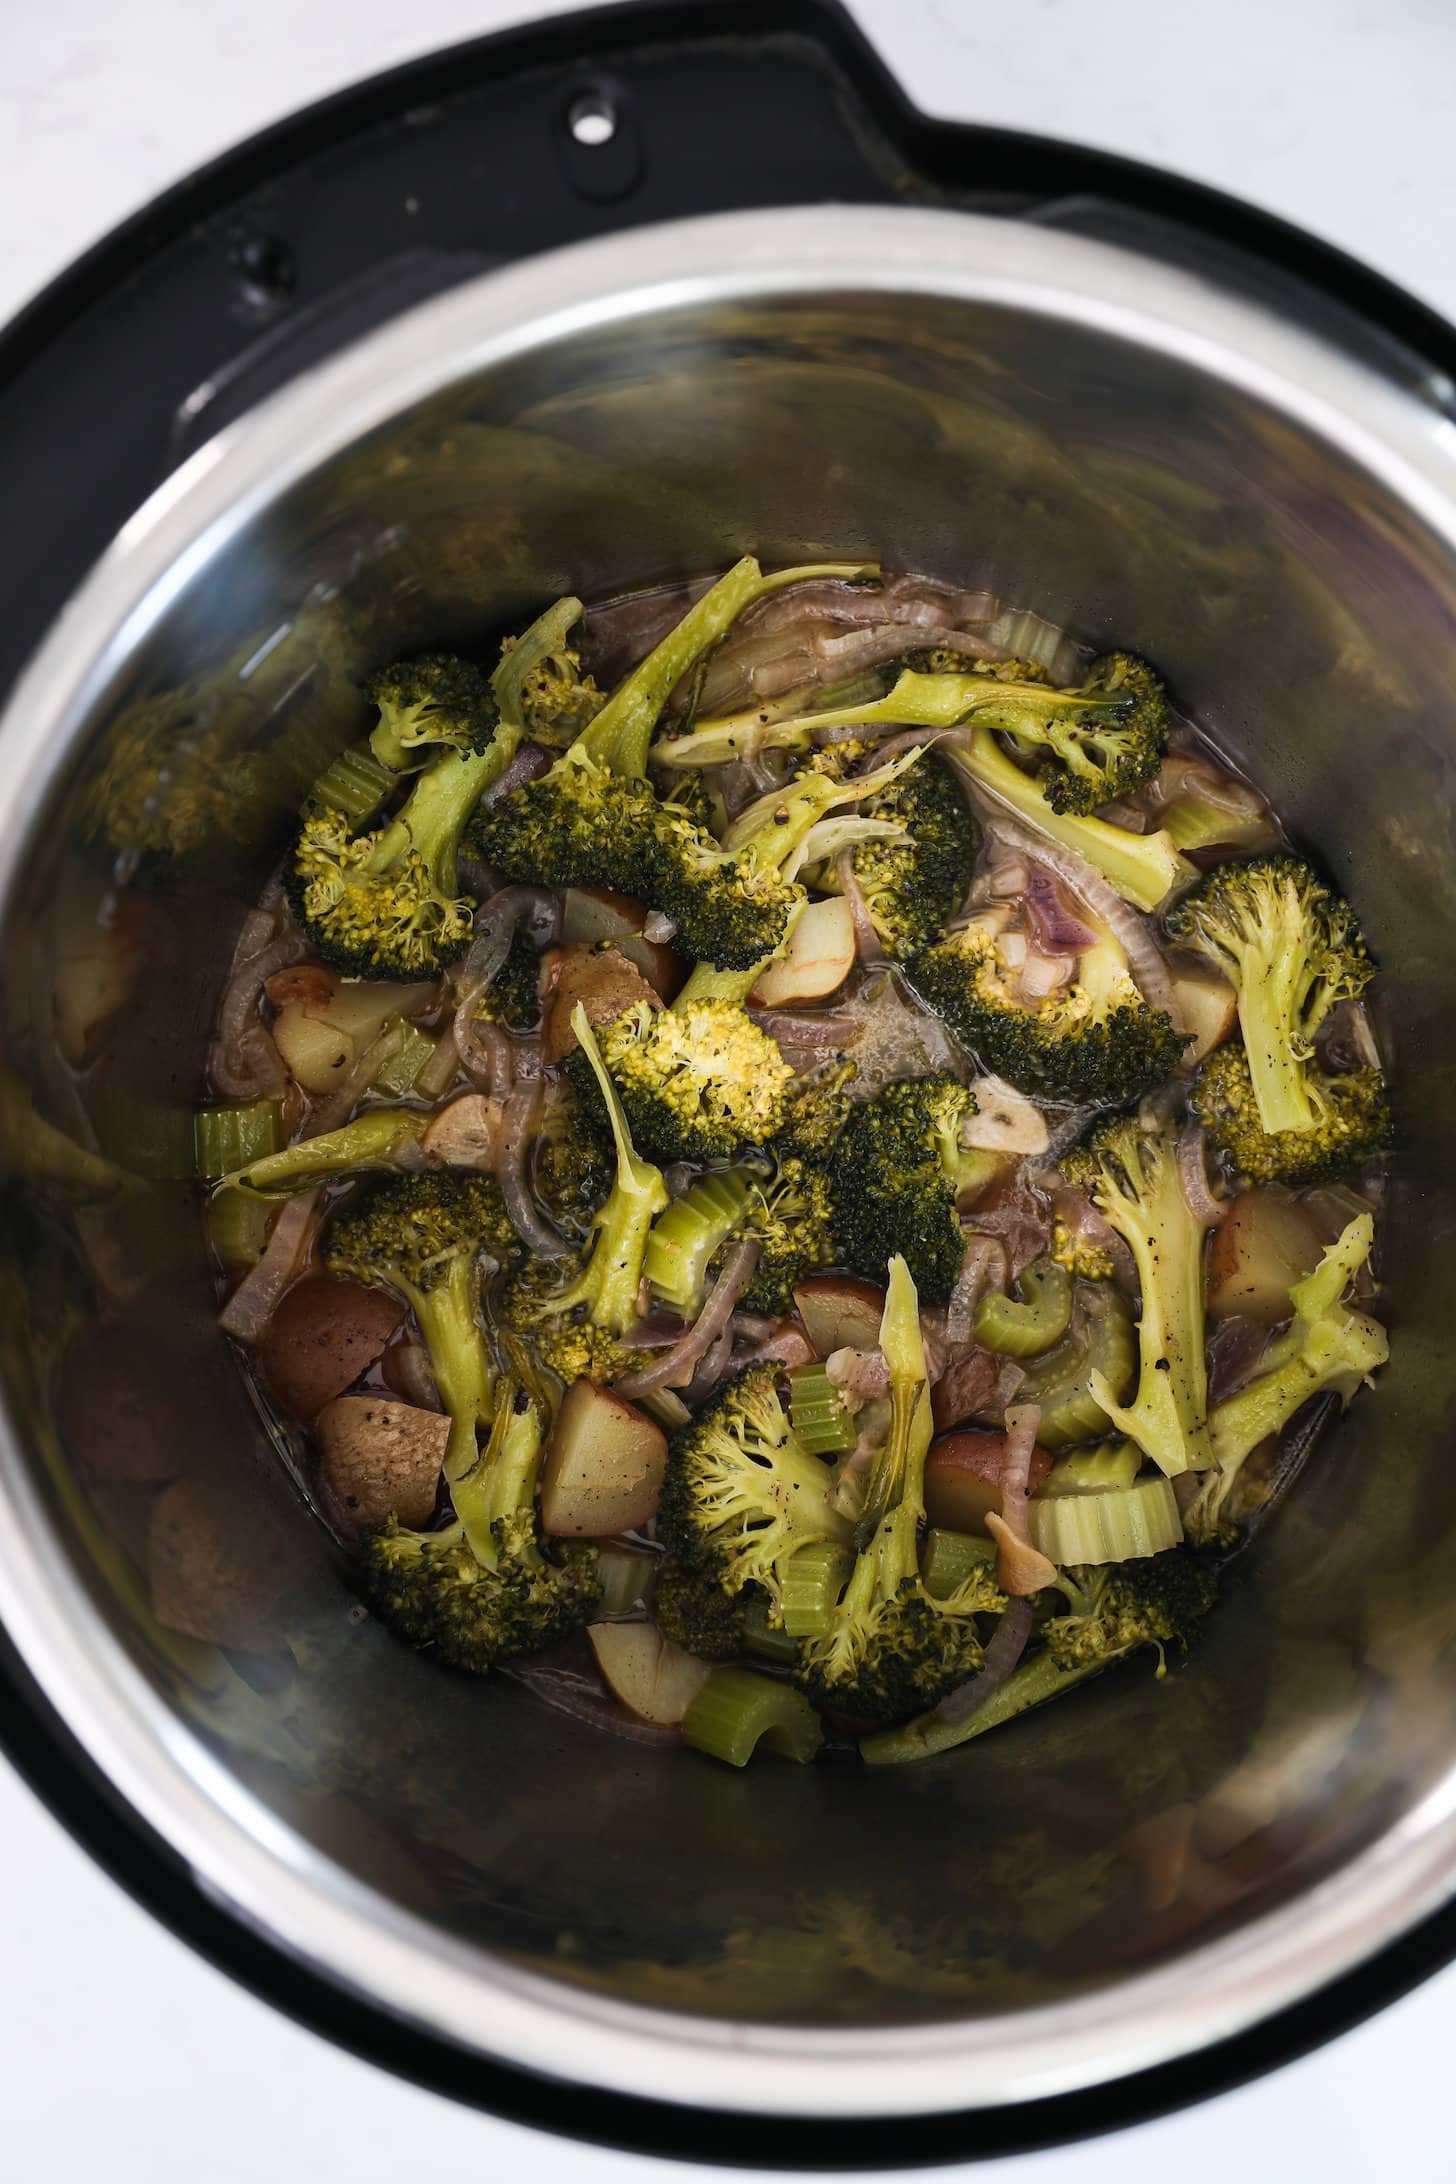 Vista panorámica de la olla instantánea con brócoli cocido y verduras.